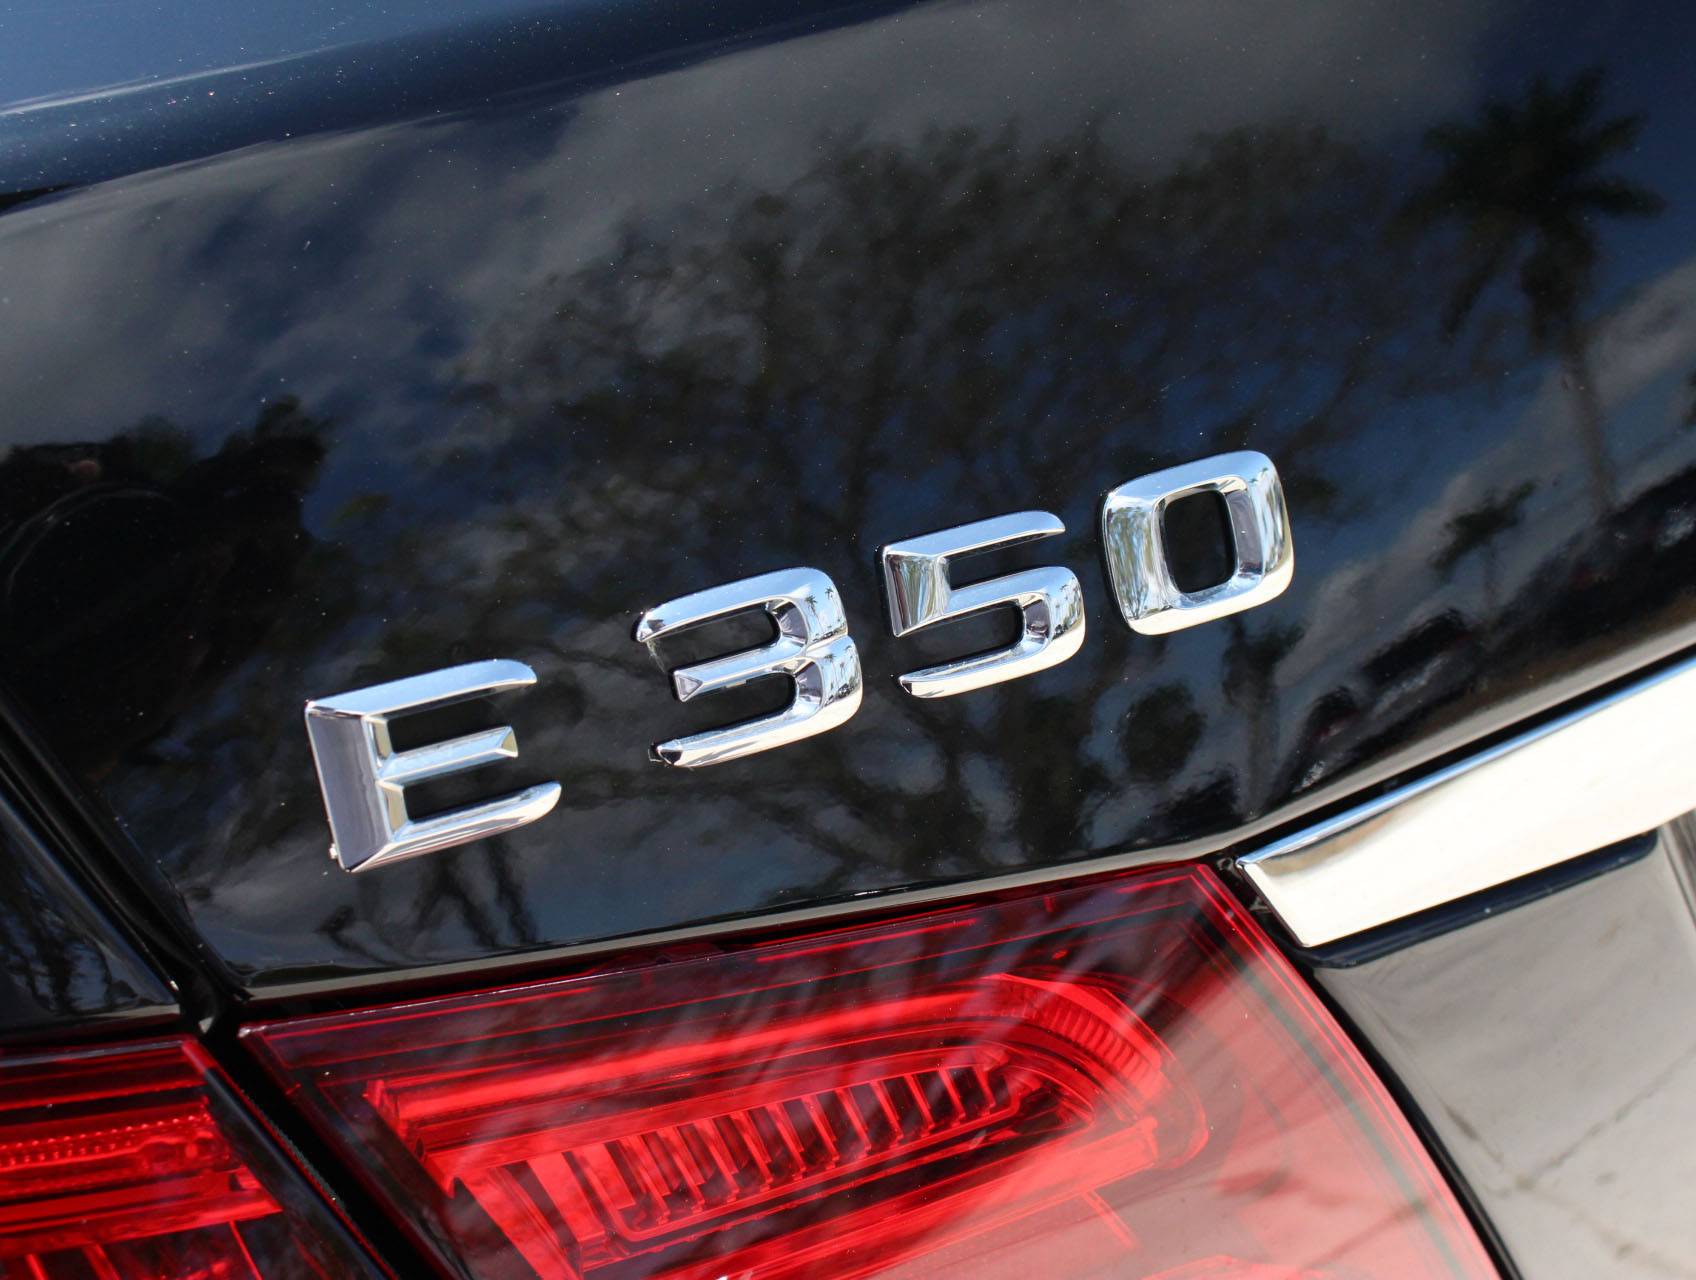 Florida Fine Cars - Used MERCEDES-BENZ E CLASS 2015 MIAMI E350 Luxury